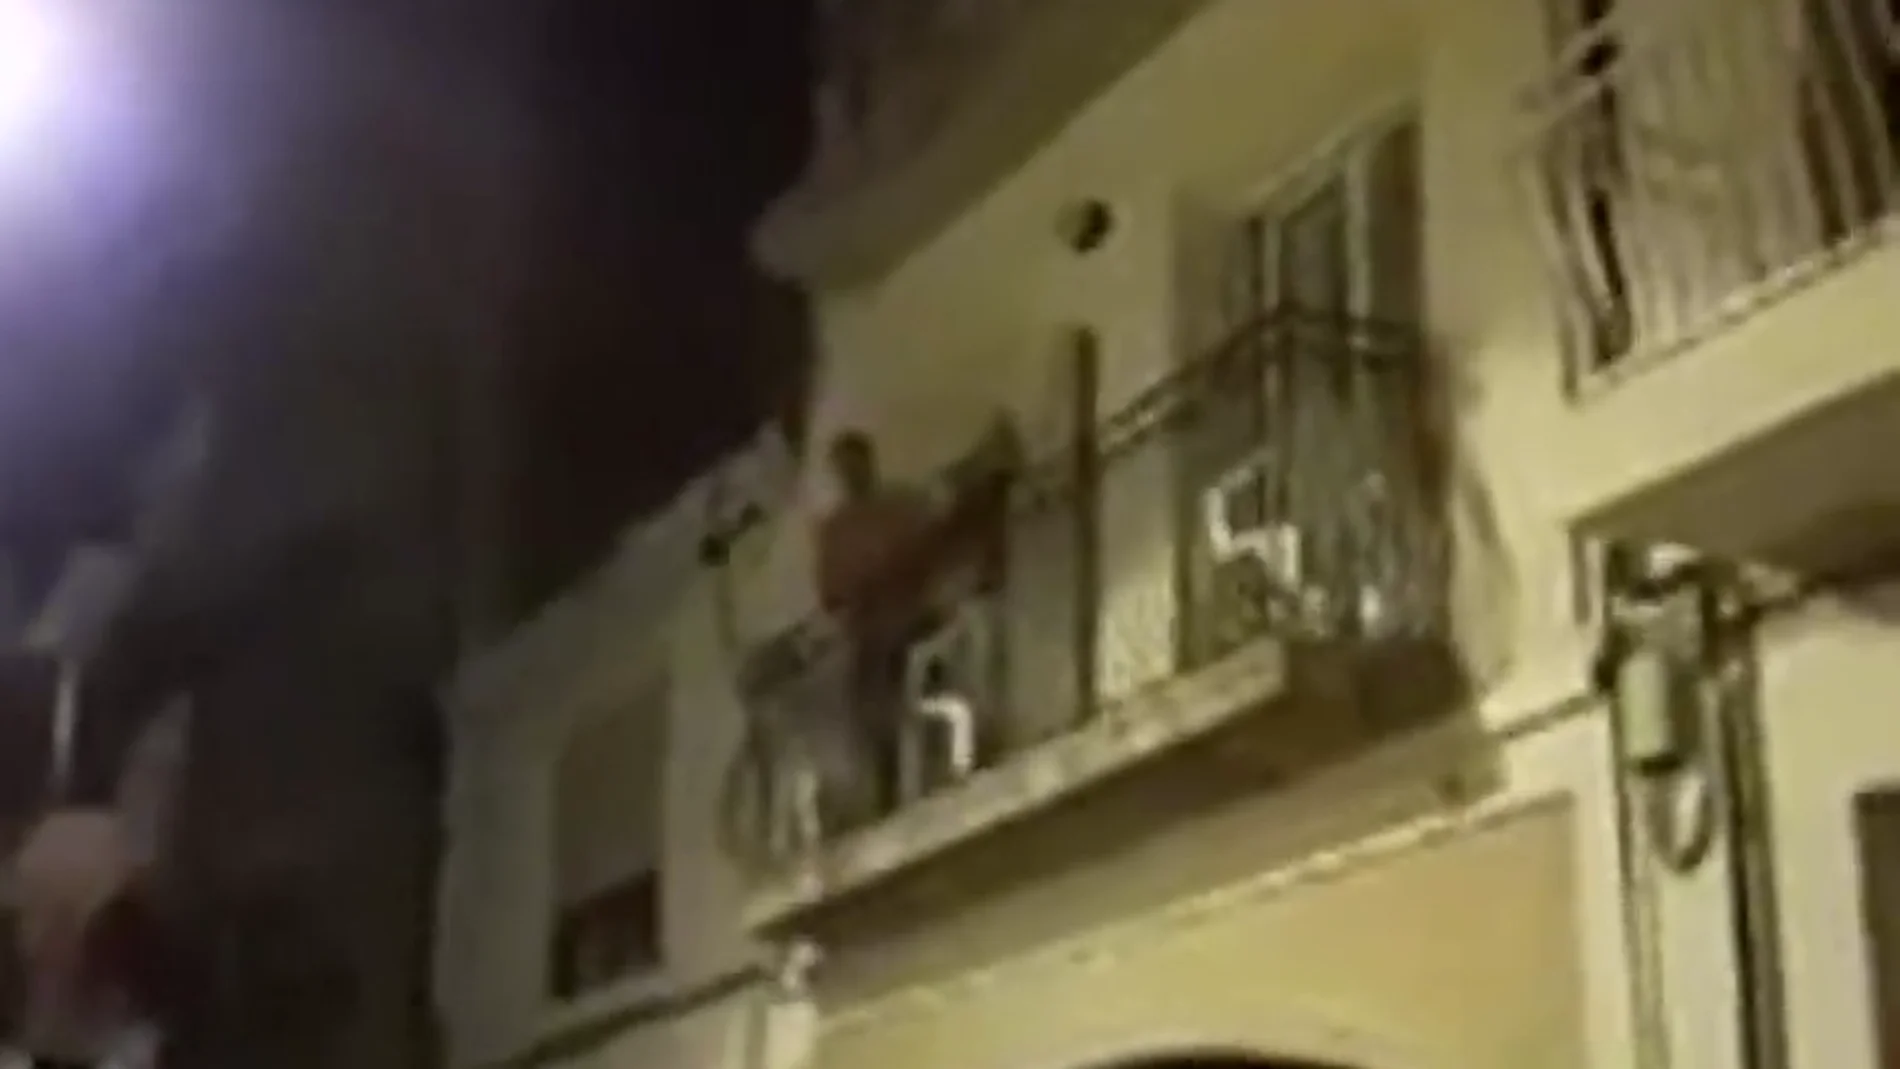 Cantando un fandango, así responde un Guardia Civil a los independentistas en Barcelona